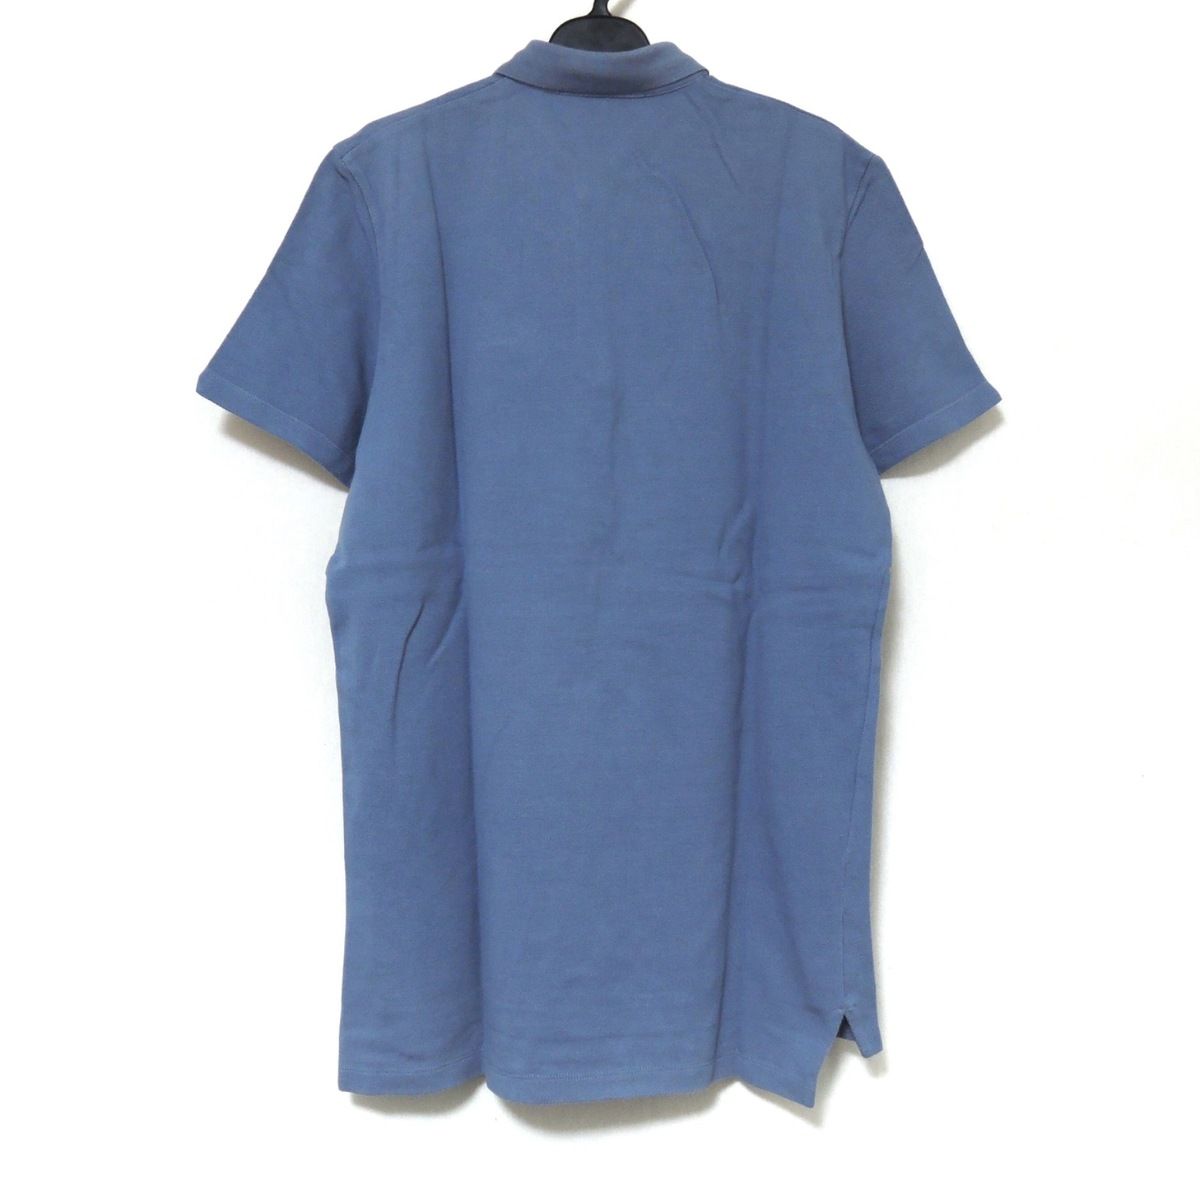 87150円で購入エルマンノ シェルヴィーノ(ERMANNO SCERVINO) ポロシャツ